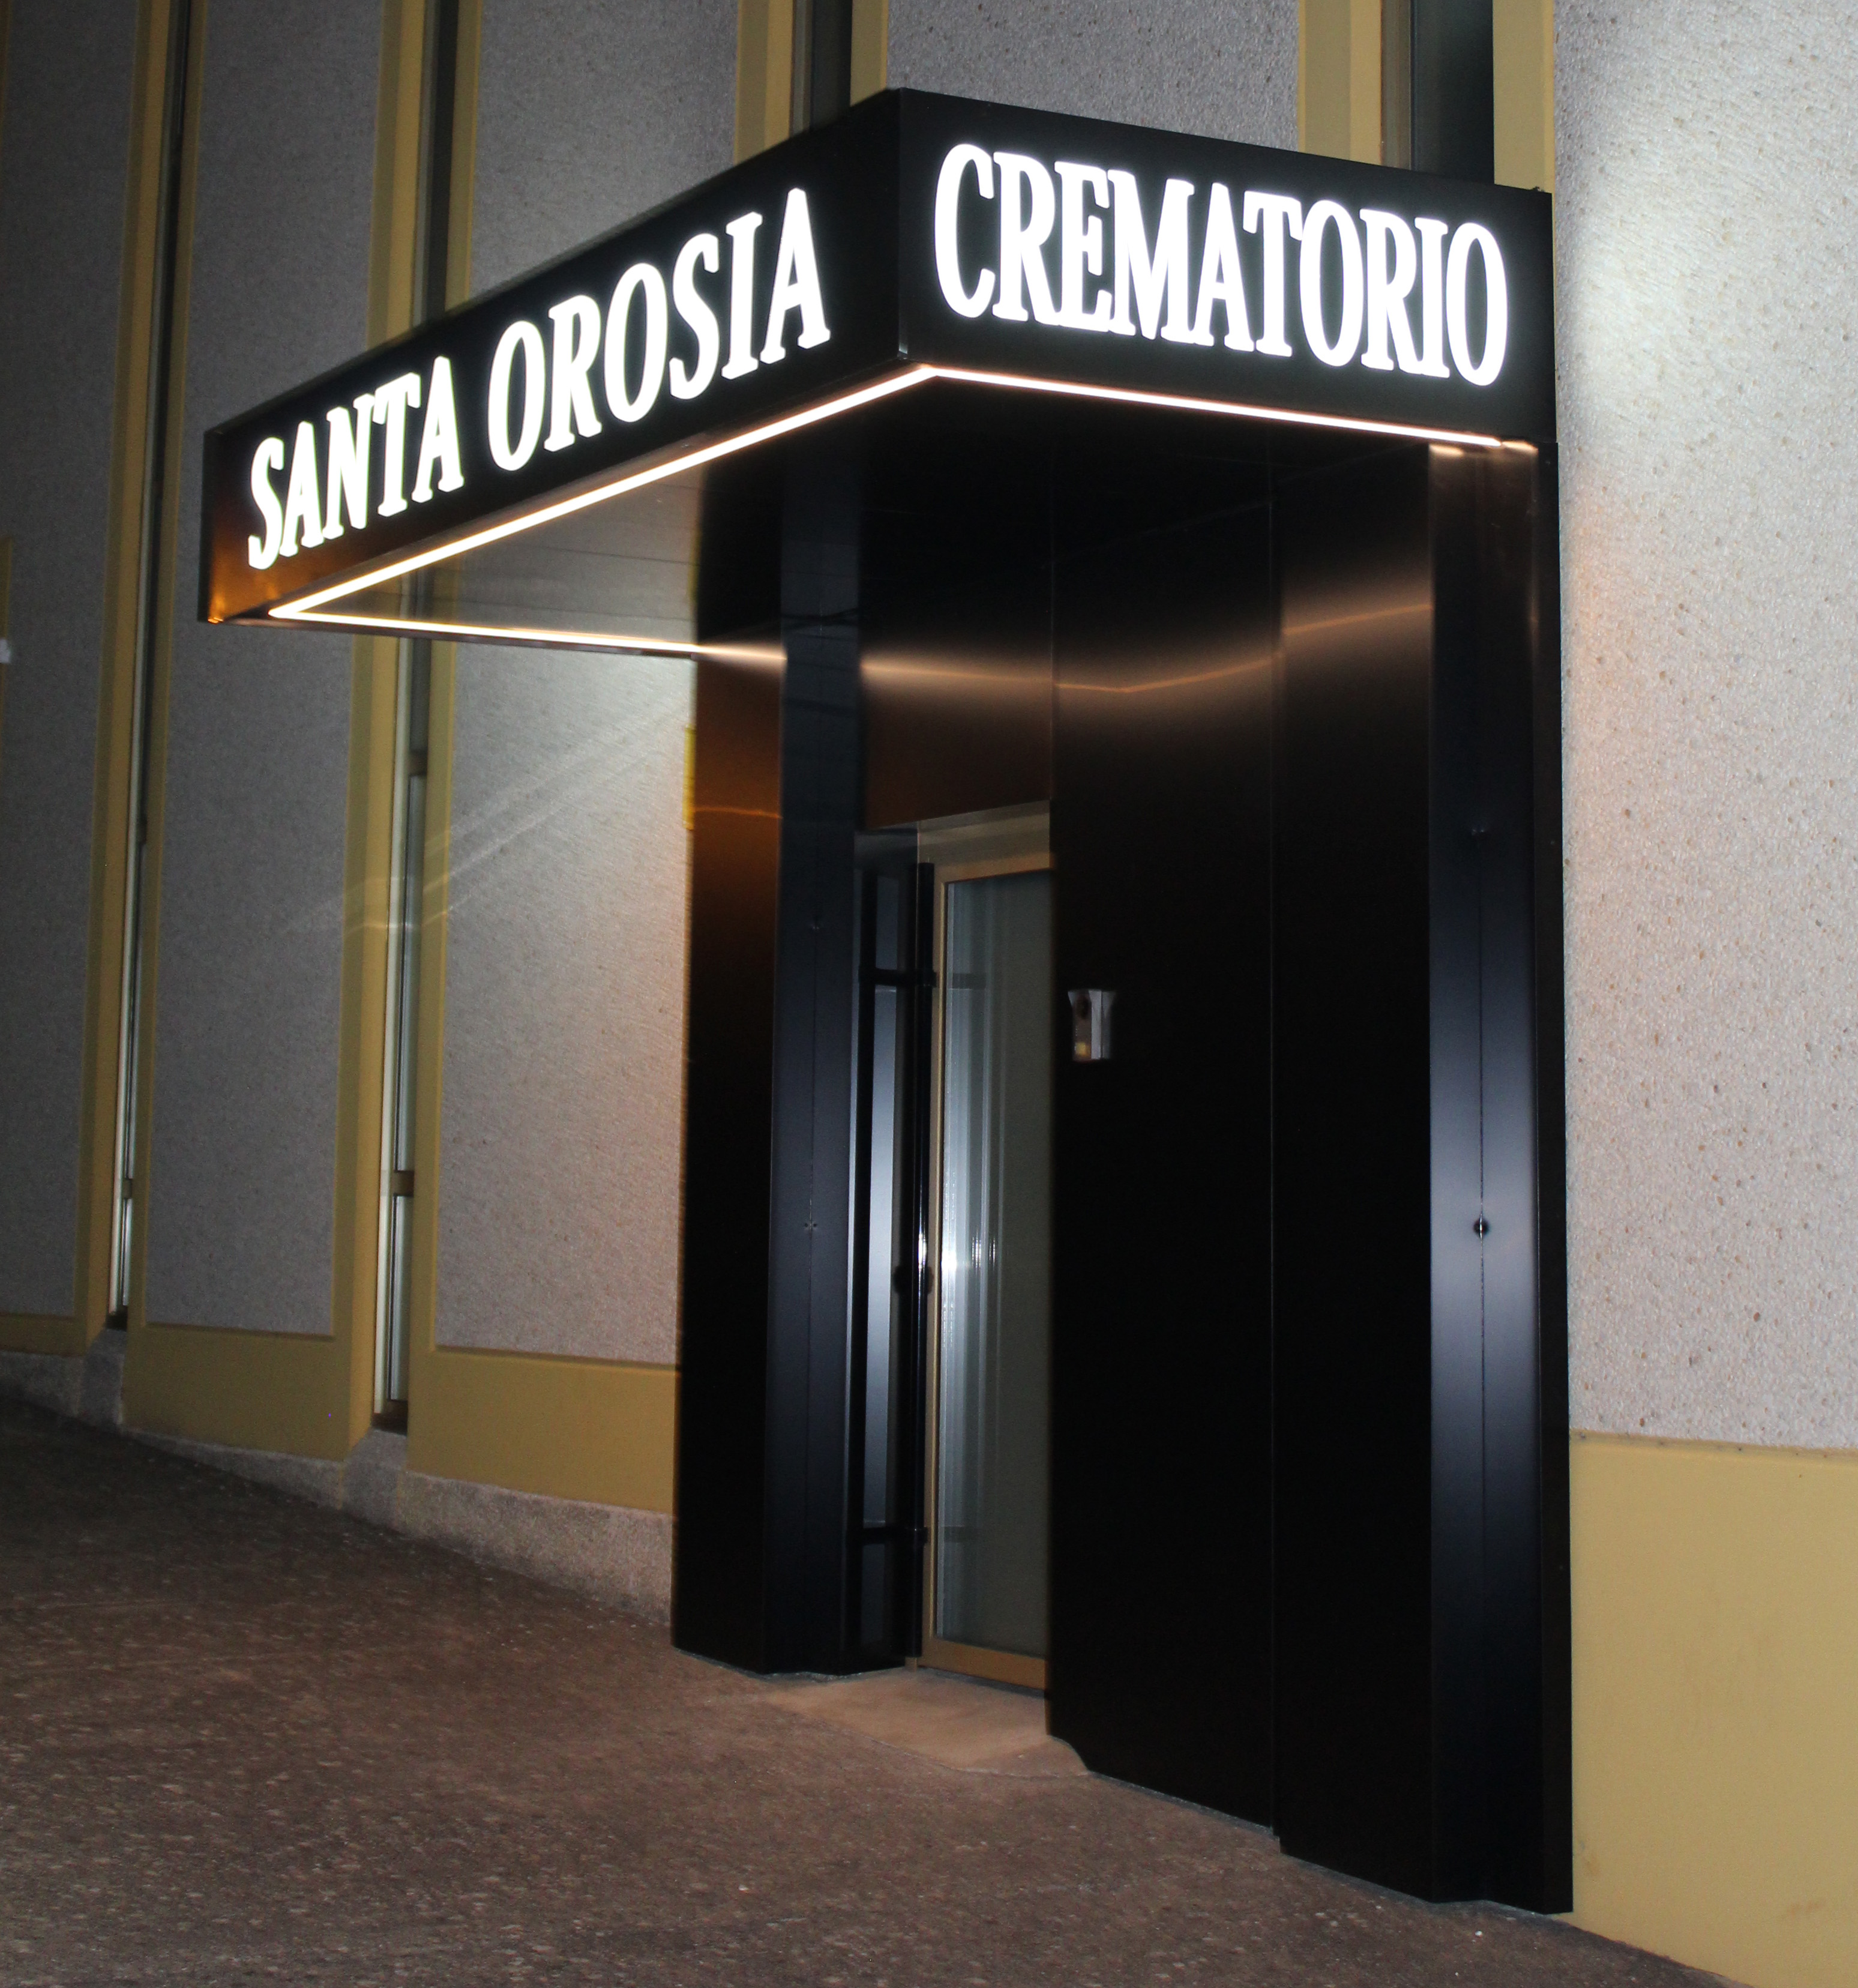 Tanatorio-Crematorio Santa Orosia (Sabiñánigo)